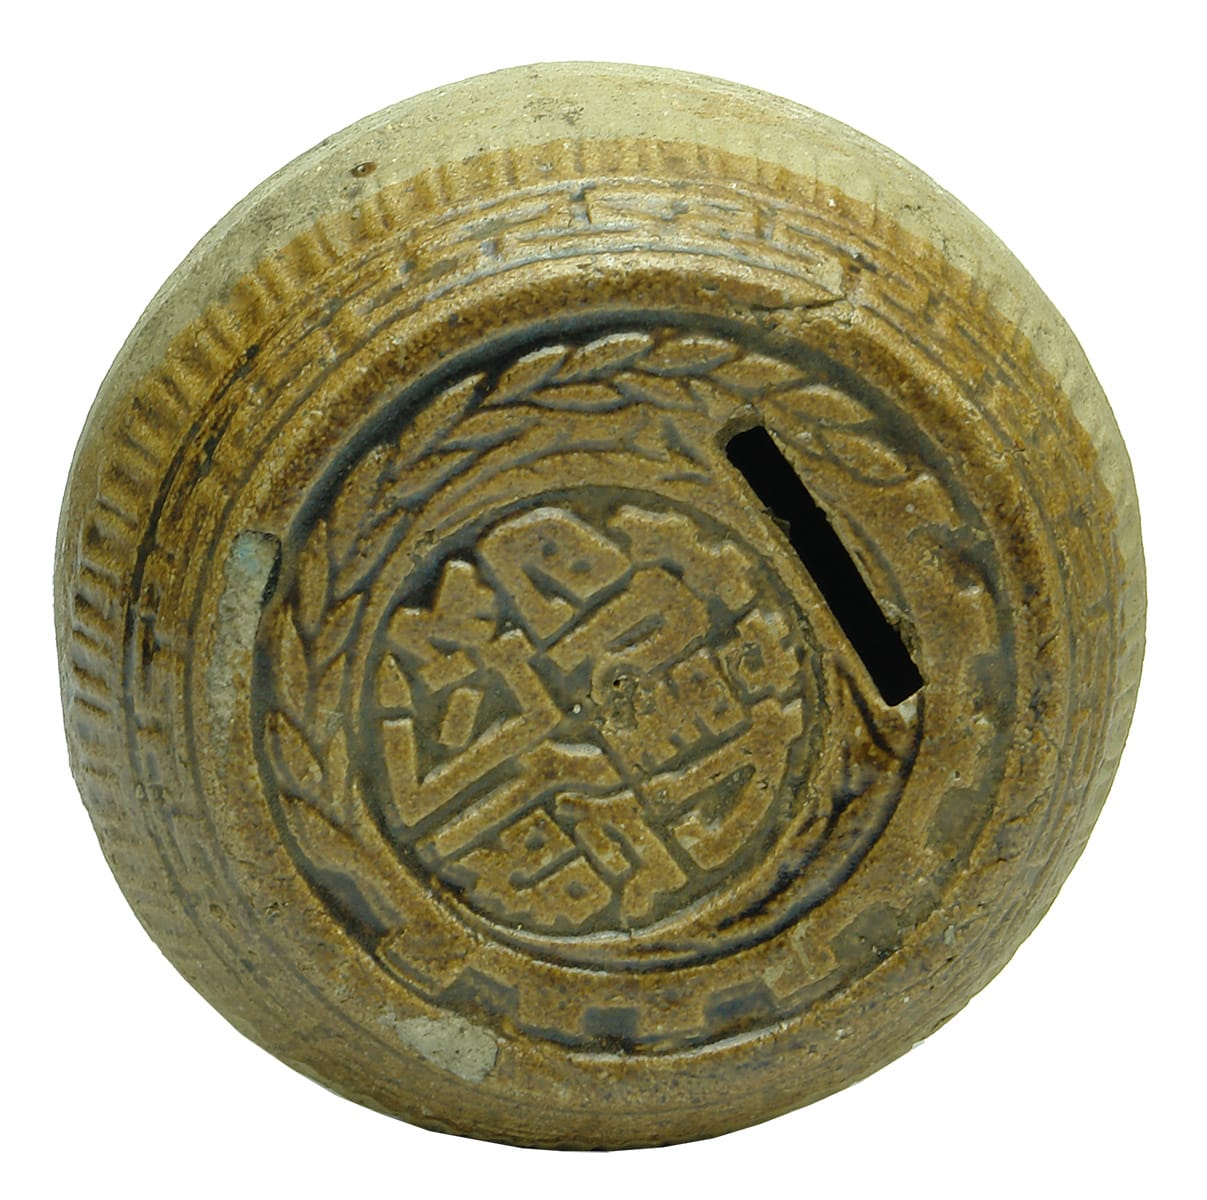 Antique Chinese Ceramic Money Box